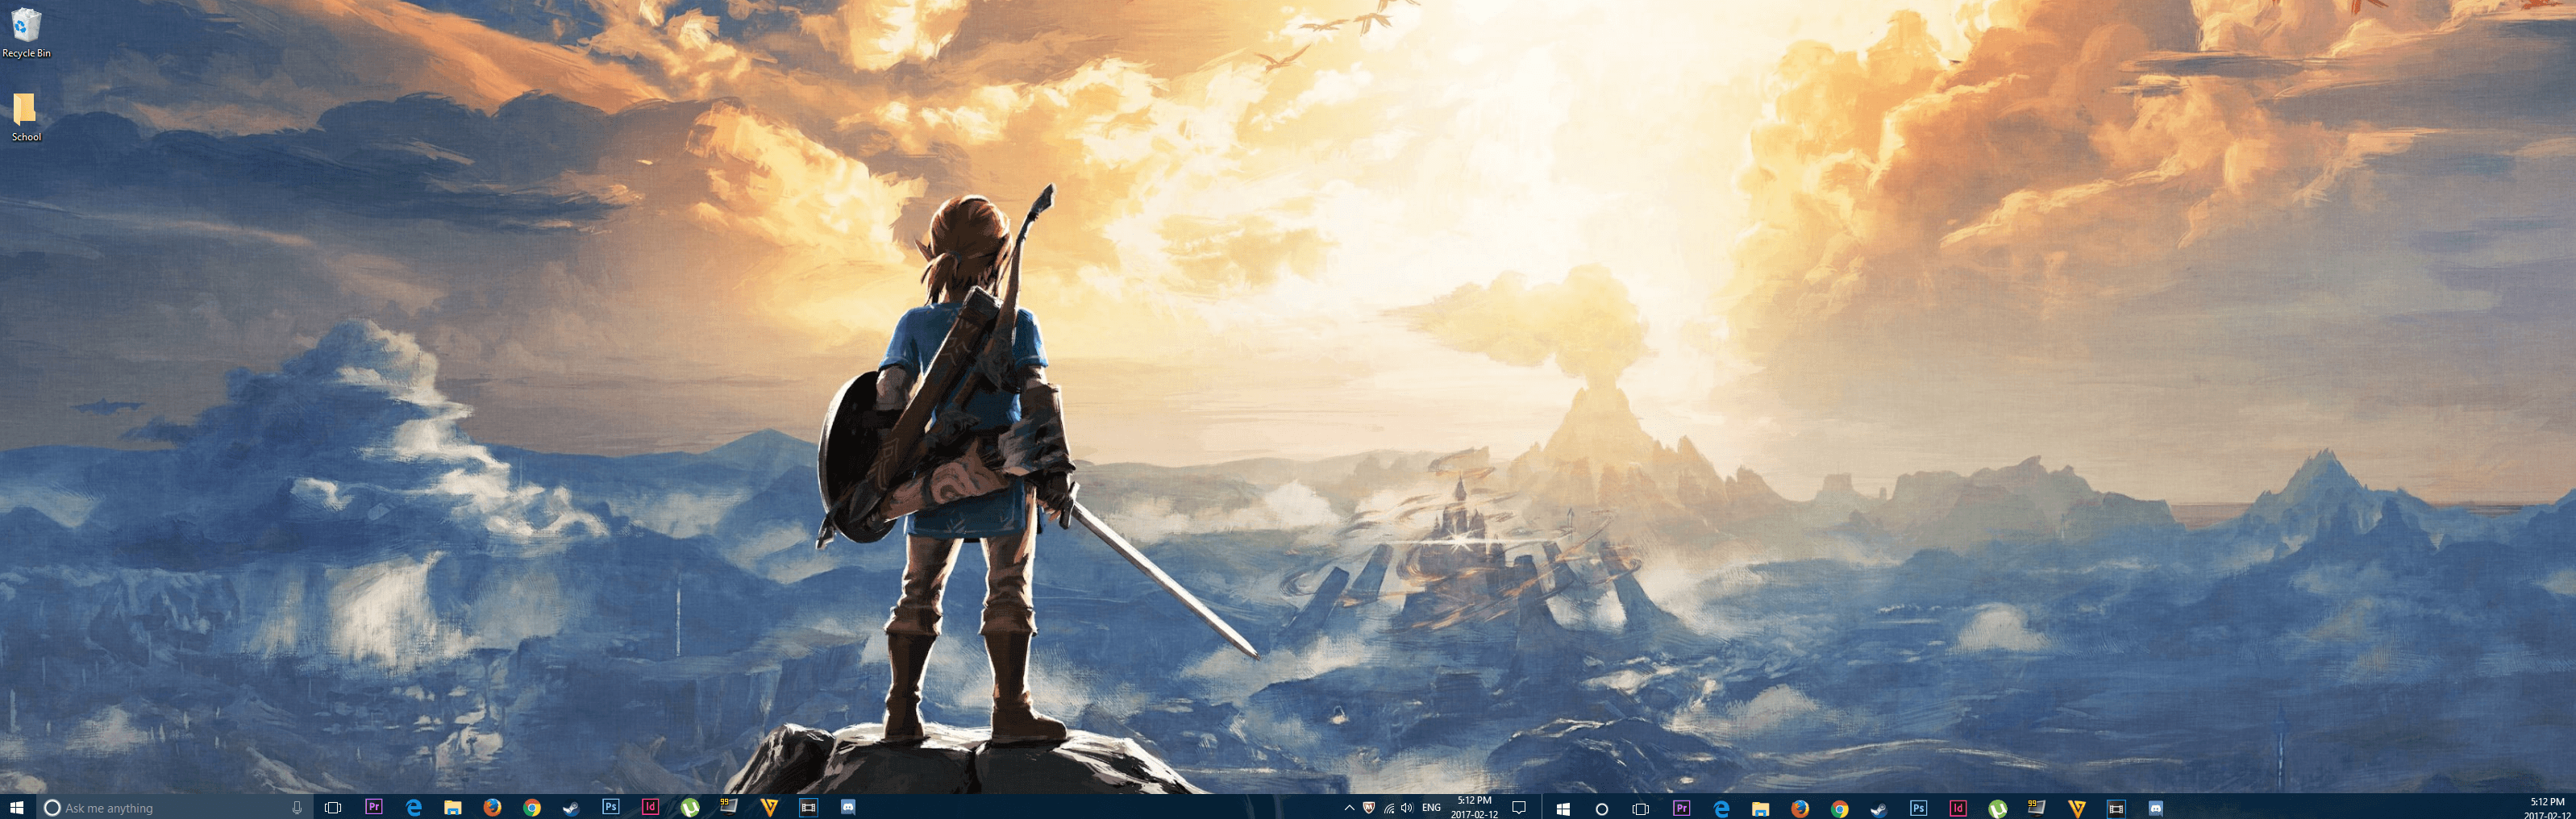 Zelda Dual Screen Wallpapers - Top Free Zelda Dual Screen Backgrounds